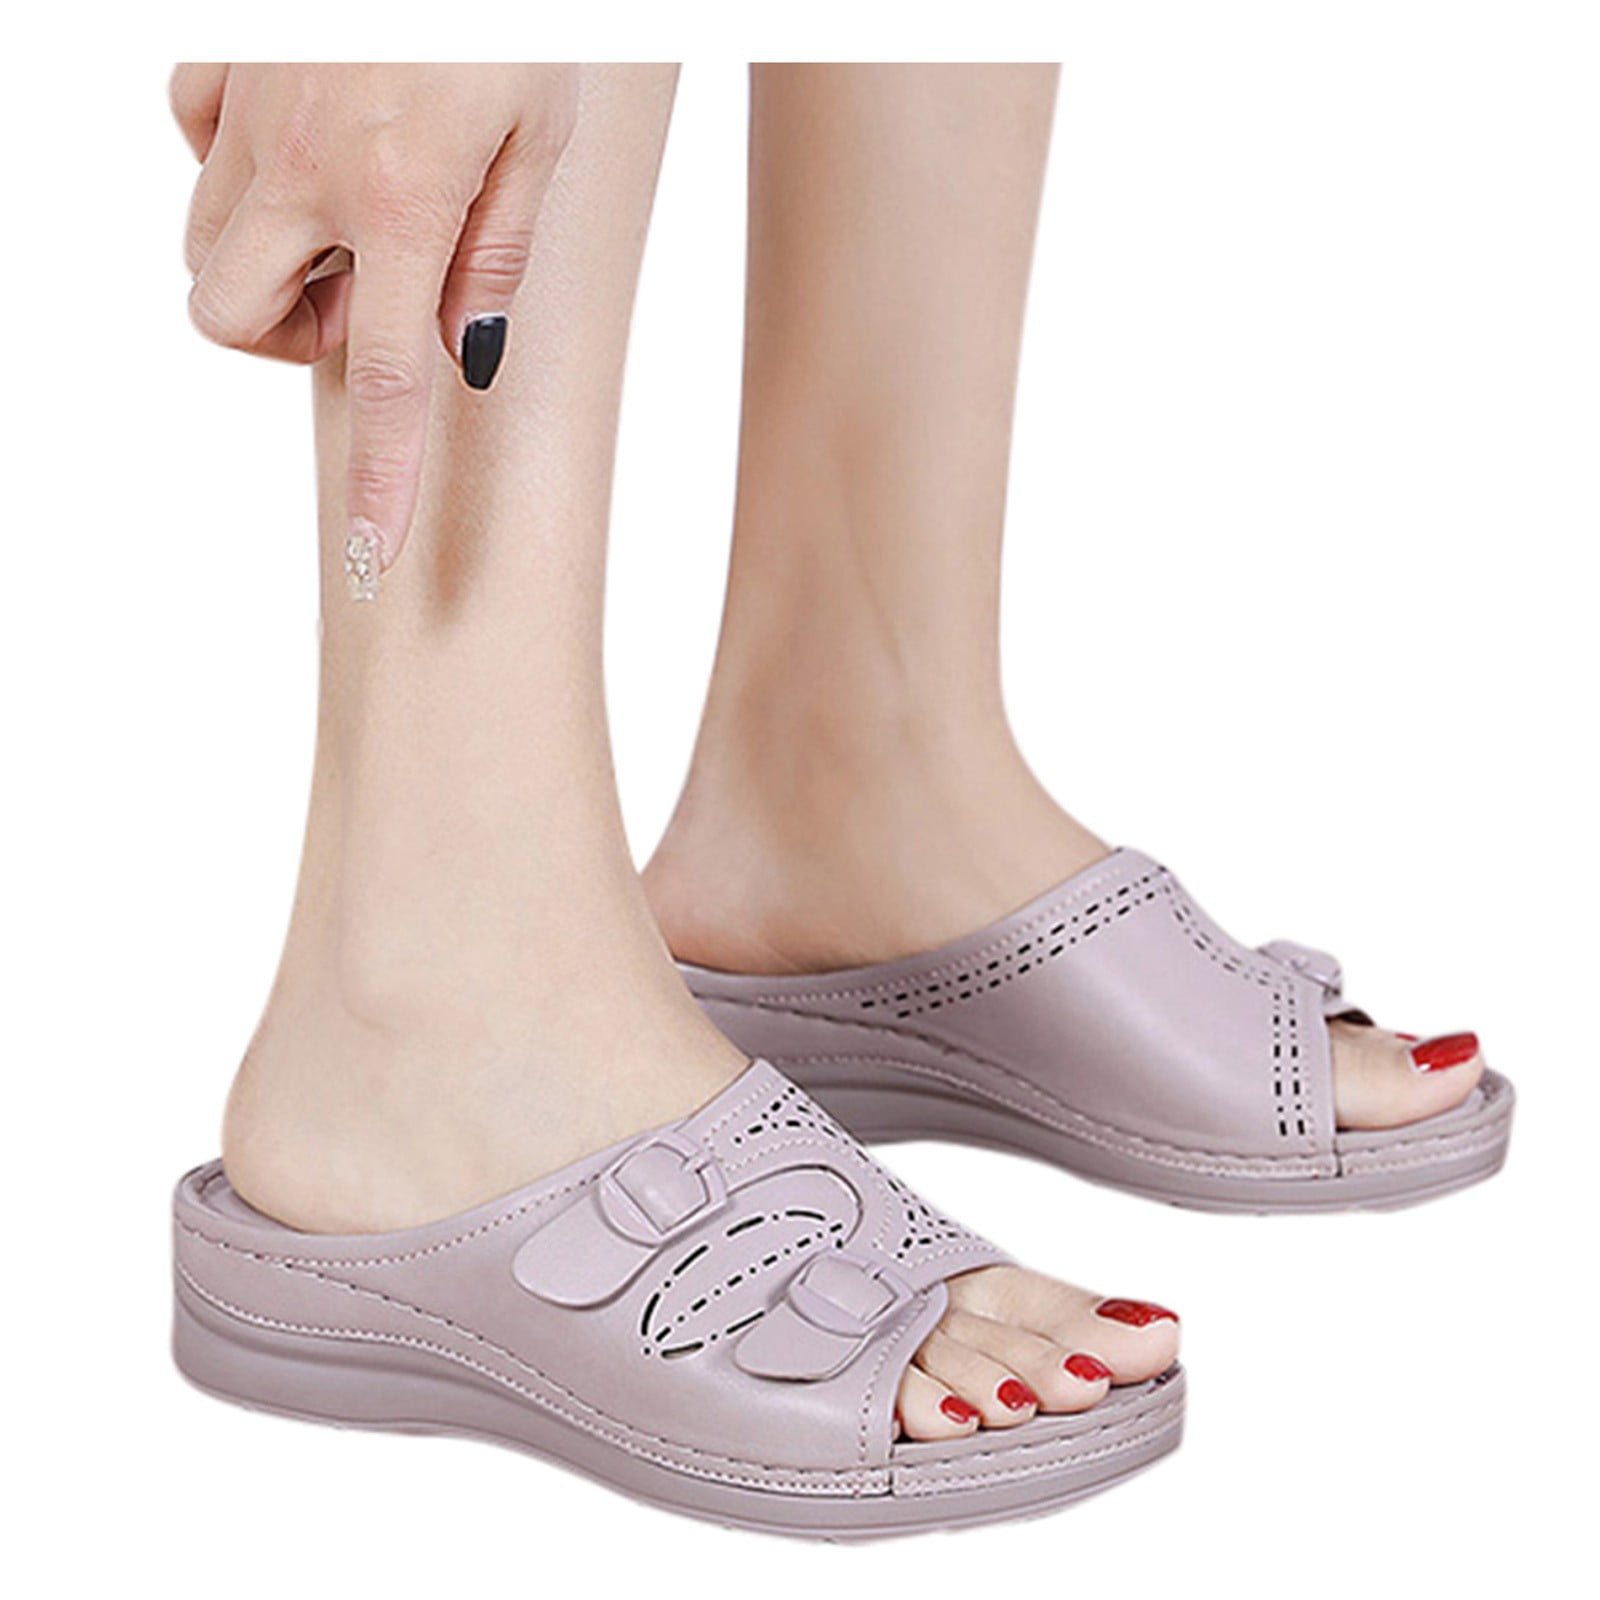 Summer Savings! Zpanxa Slippers for Women Summer Slip-On Wedges